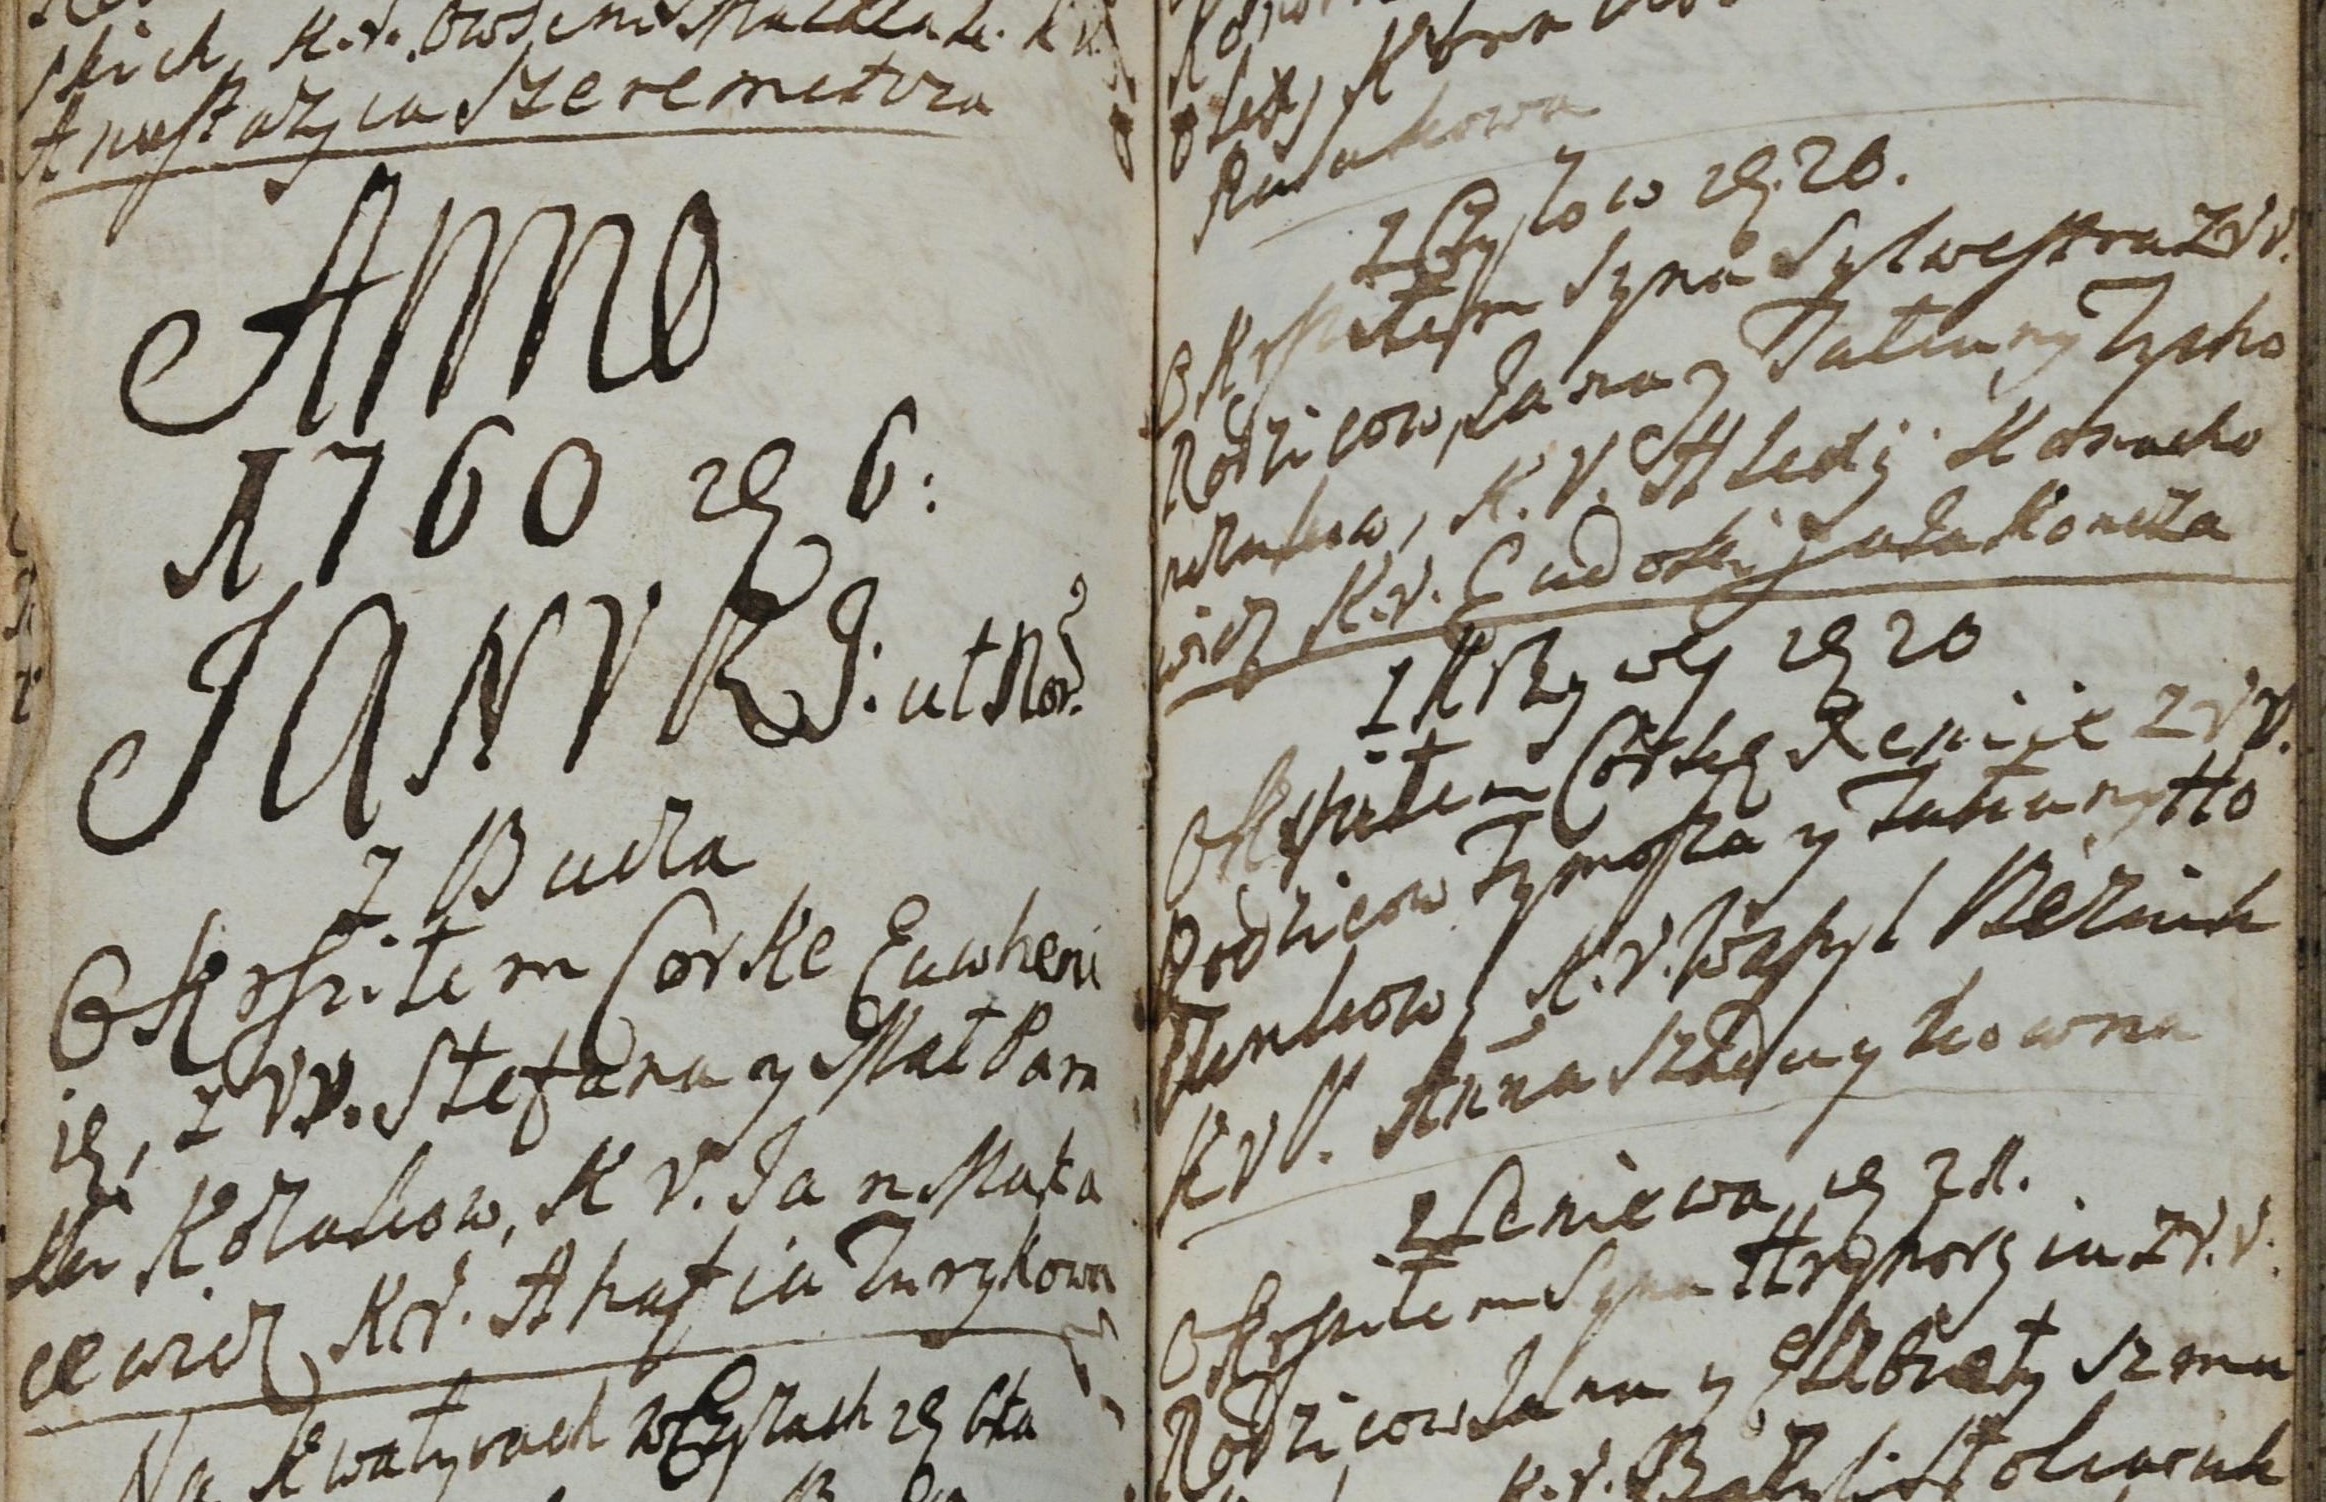 Як називали хлопців у 1760 р.? На основі матеріалів з парафіяльних метрик у Чижах